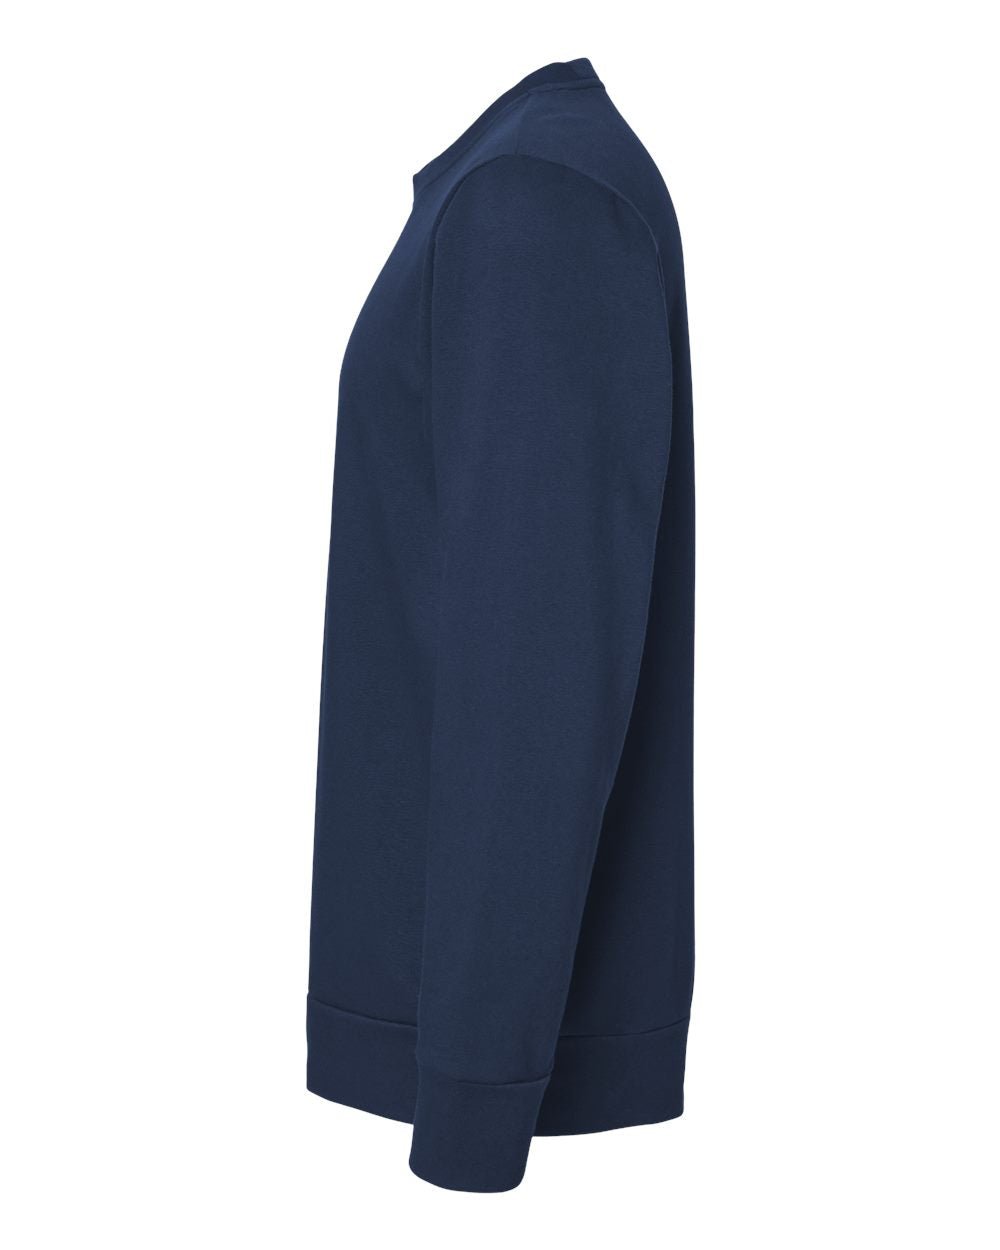 Adidas A434 Fleece Crewneck Sweatshirt #color_Collegiate Navy